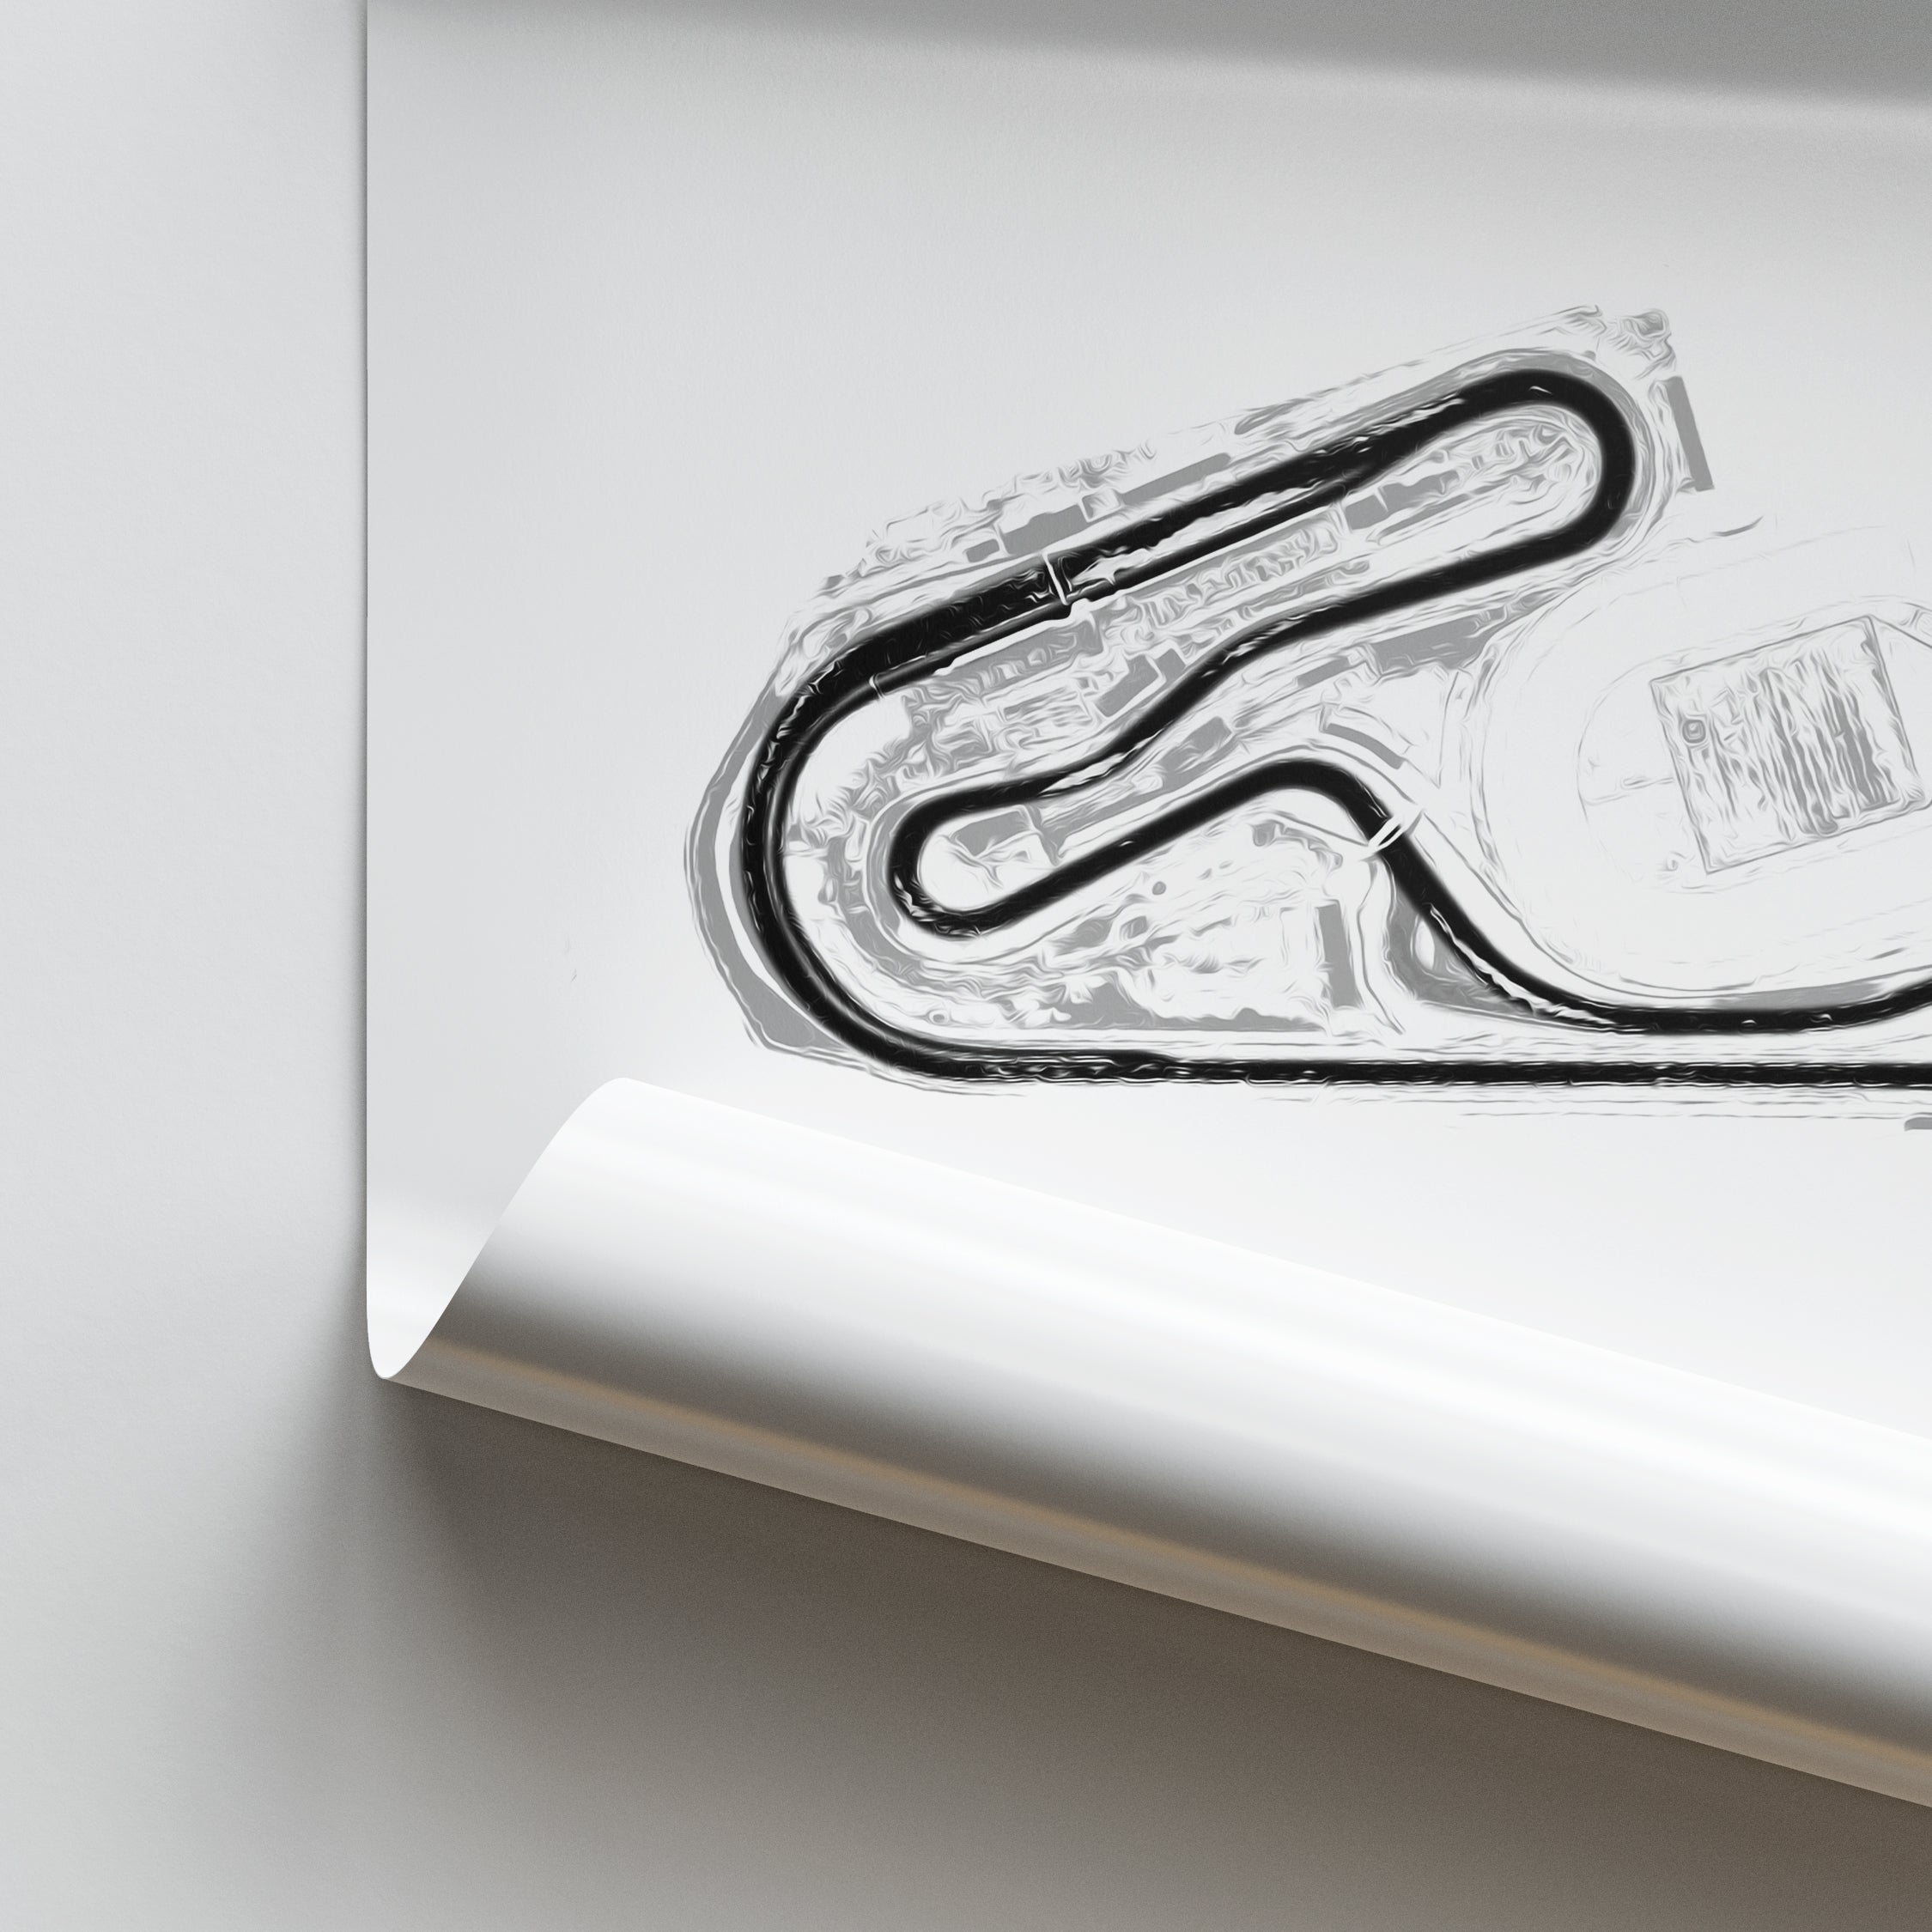 Tsukuba Circuit - Racetrack Print